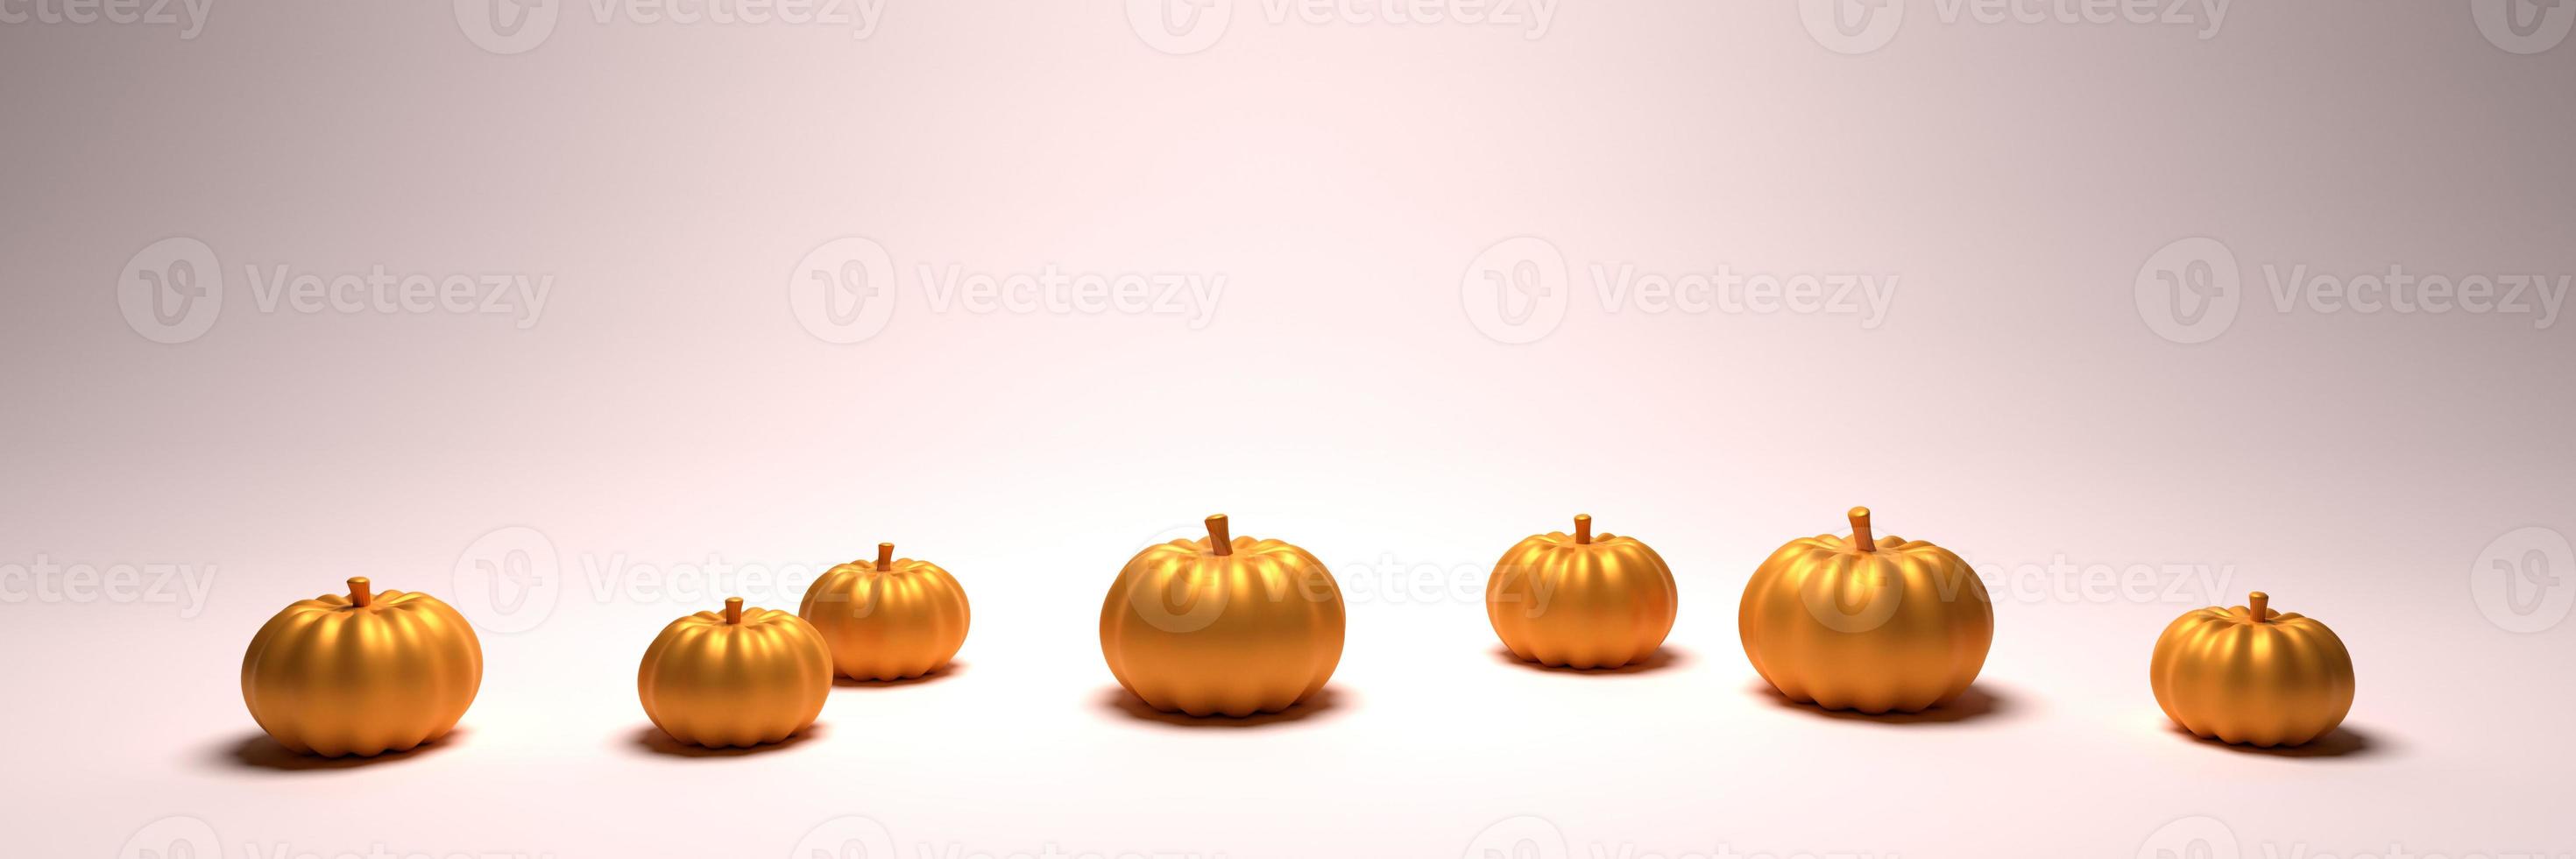 citrouille dorée réaliste sur fond blanc. bannière d'halloween de thanksgiving avec la chute de la citrouille. illustration de rendu 3d. photo